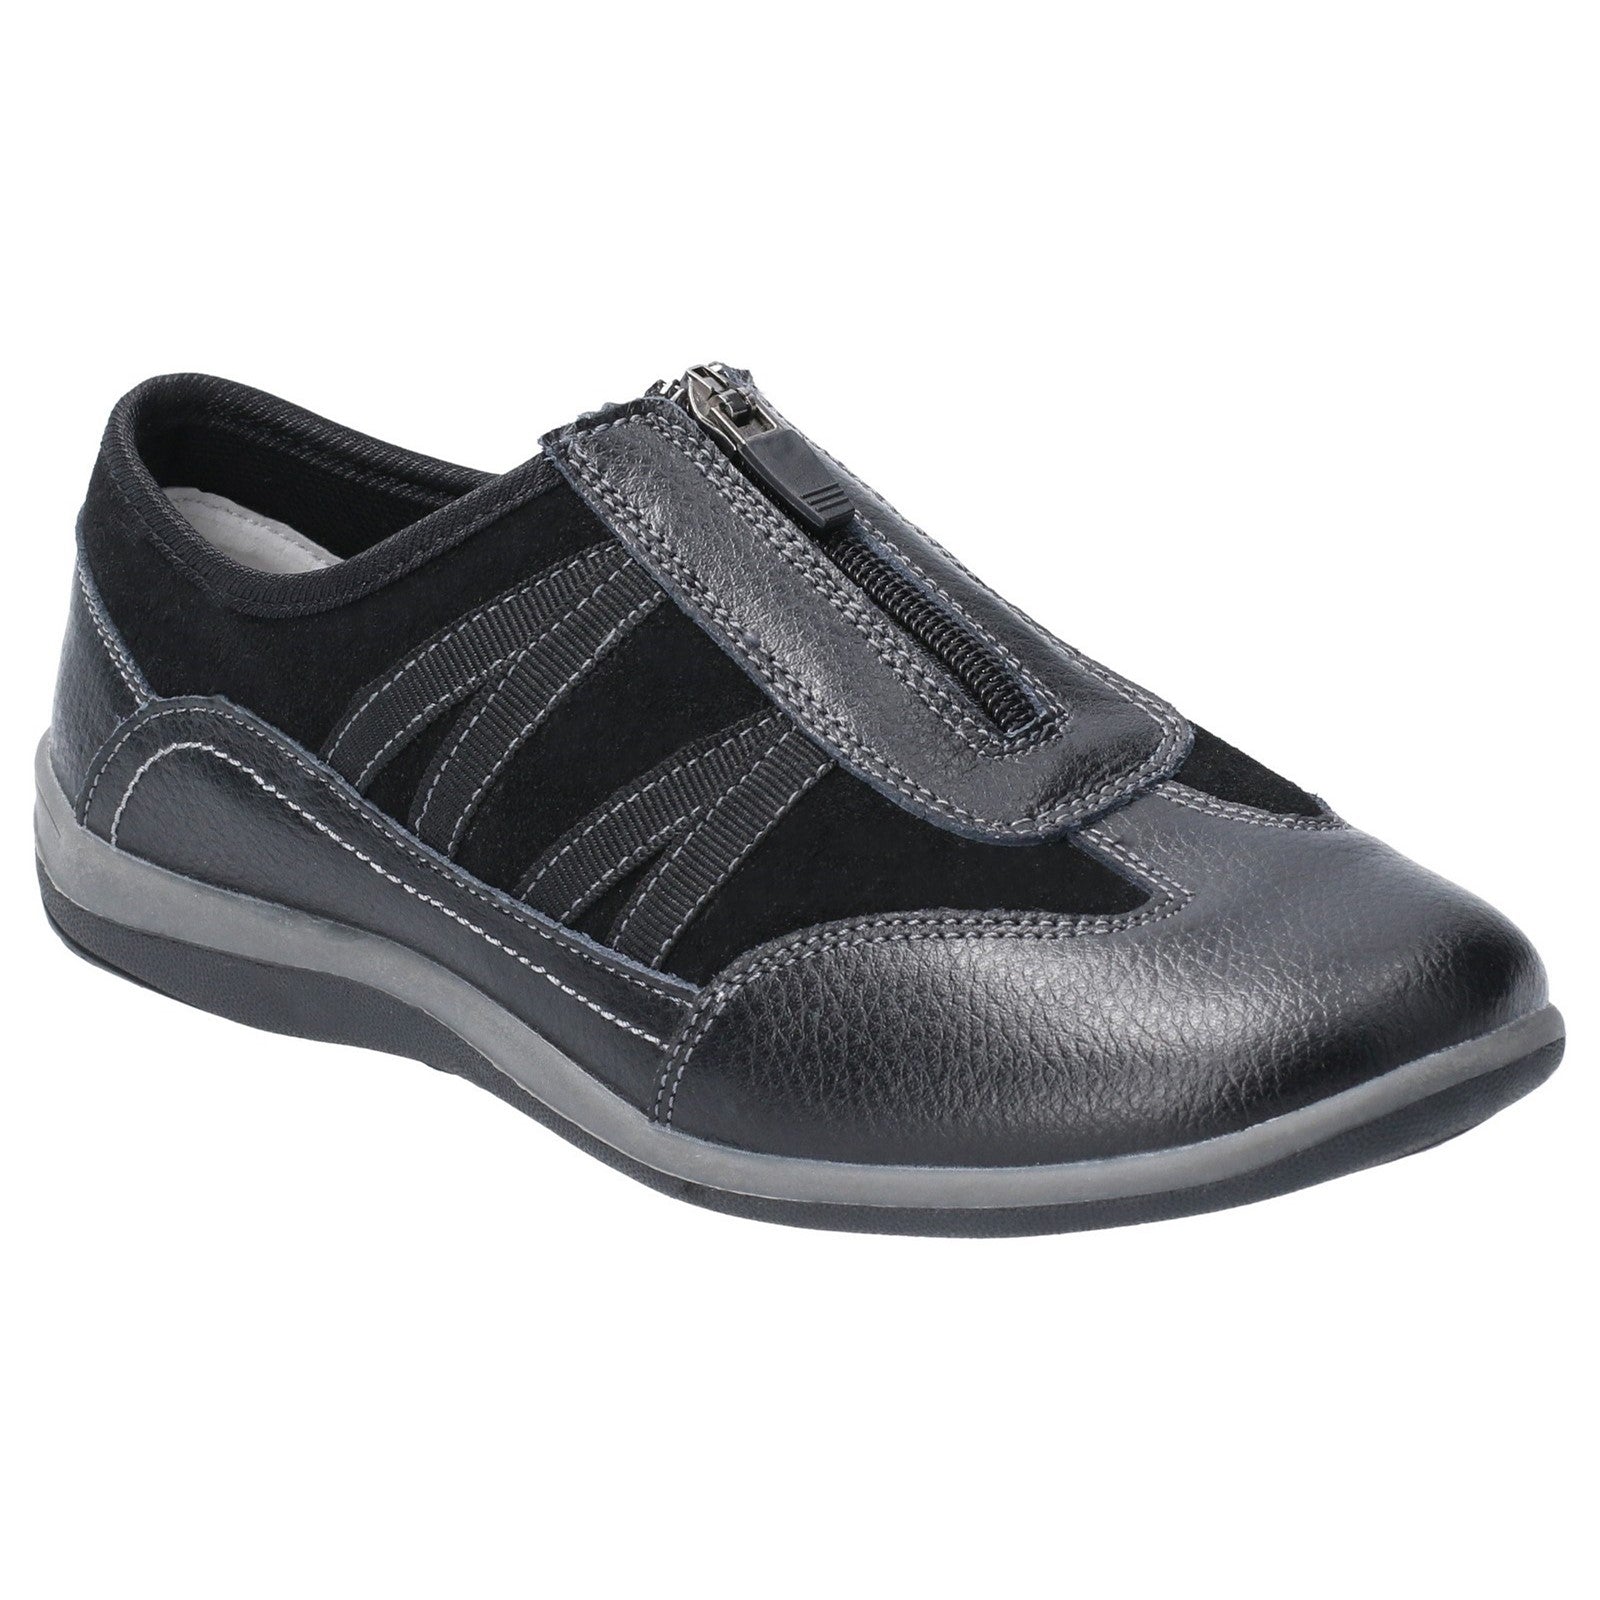 Fleet & Foster Mombassa Leather Slip on Shoe